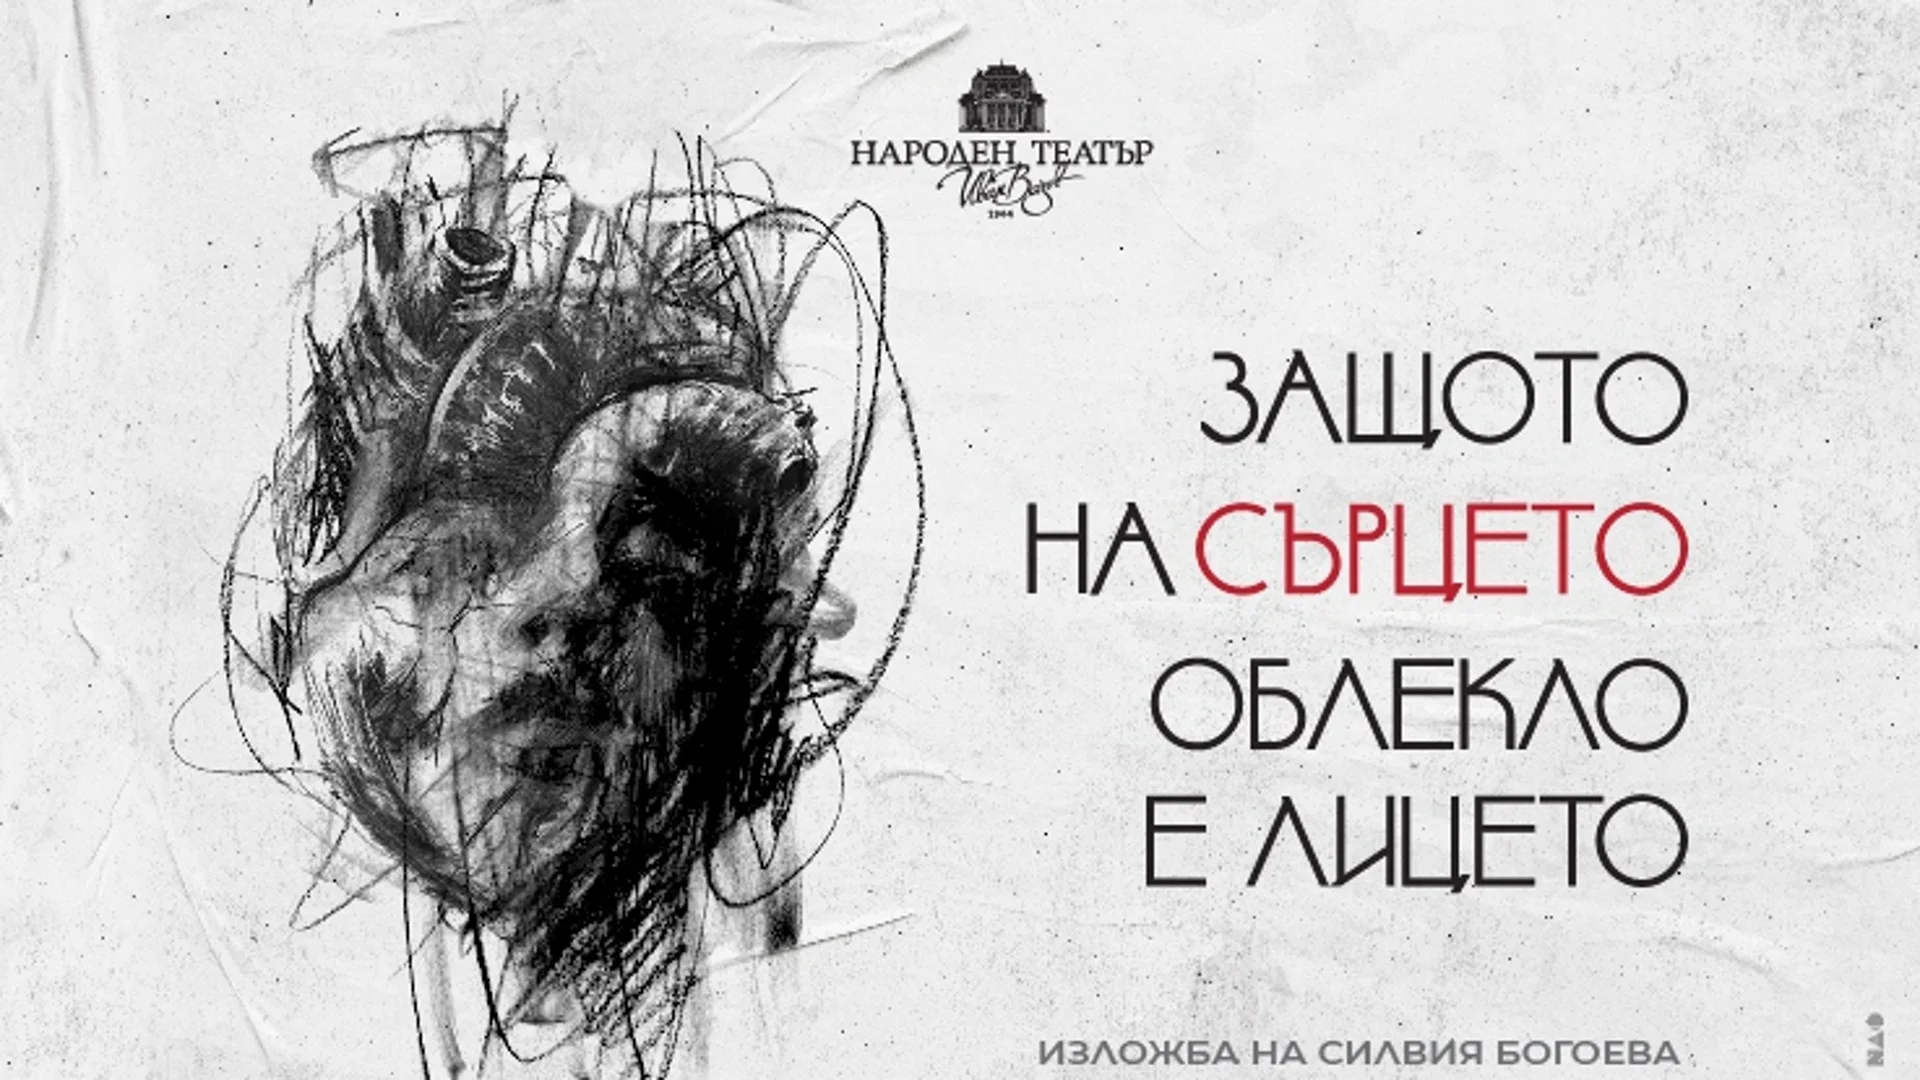 Откриват изложба на Силвия Богоева, посветена на "Моби Дик" в Народен театър "Иван Вазов"